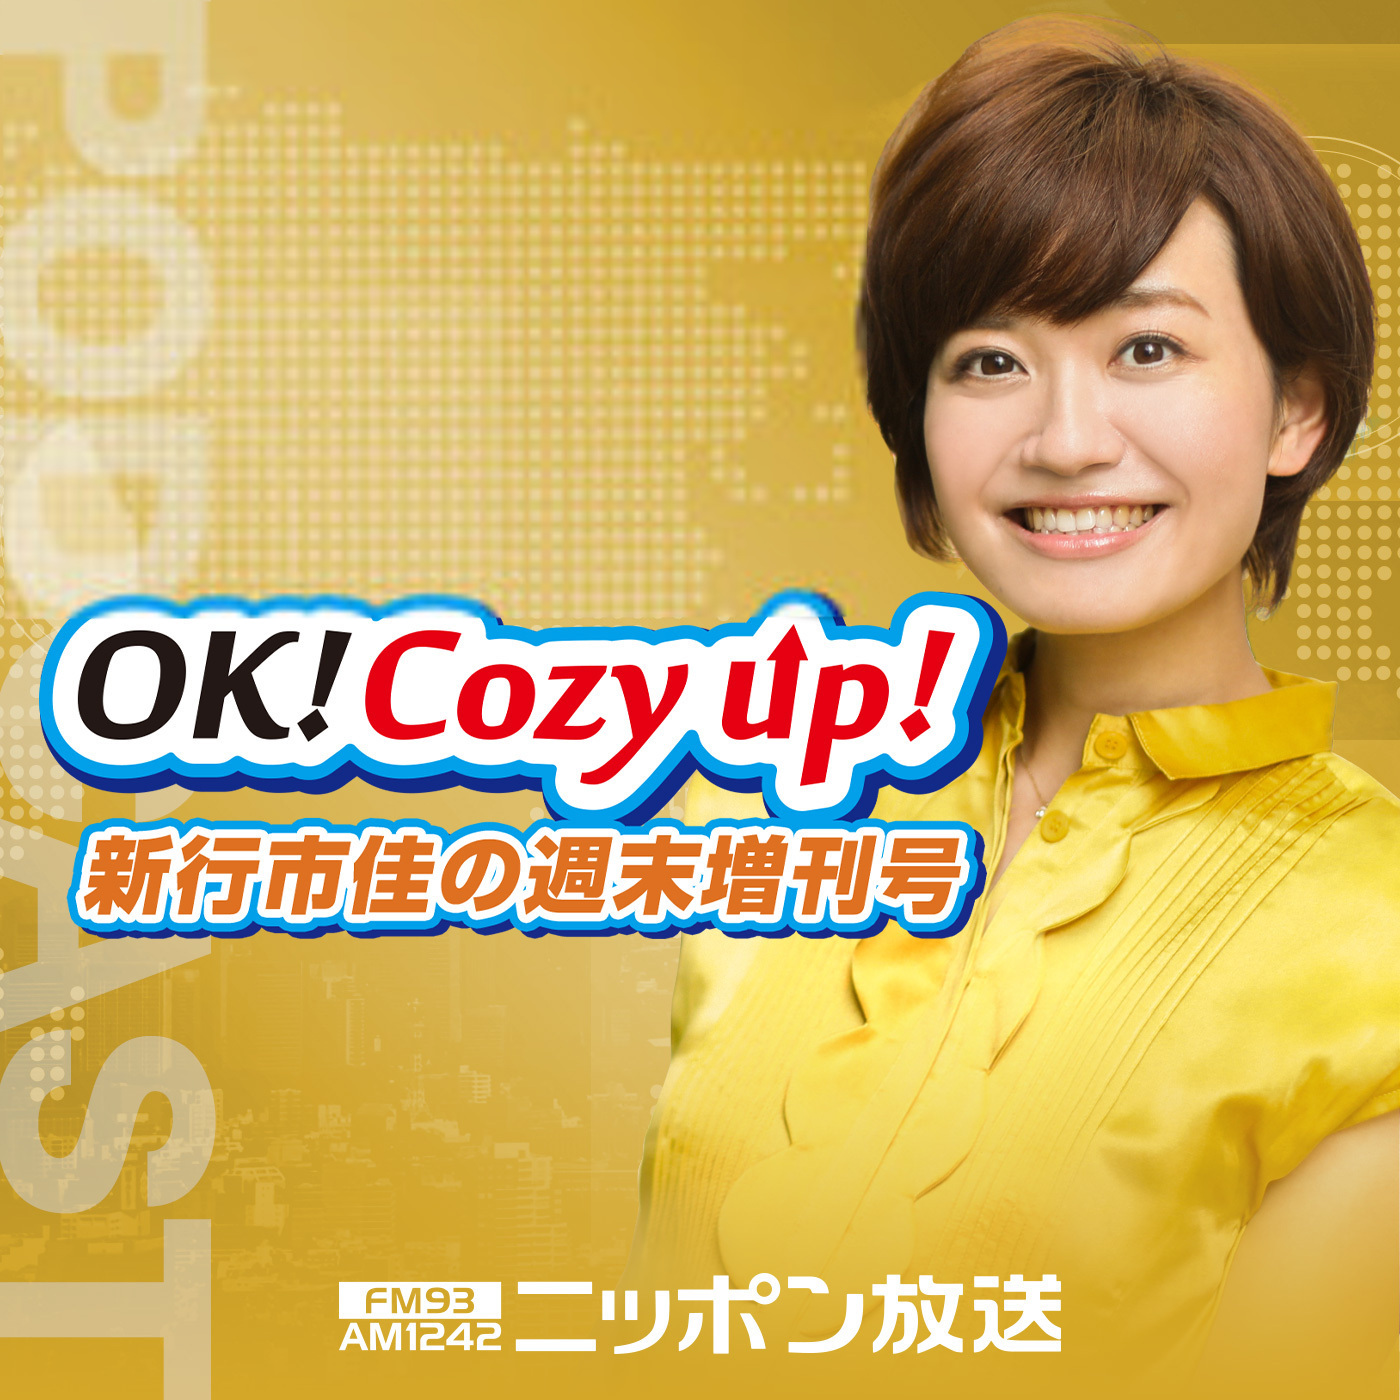 2021年4月24日（土）「OK! Cozy up!週末増刊号」